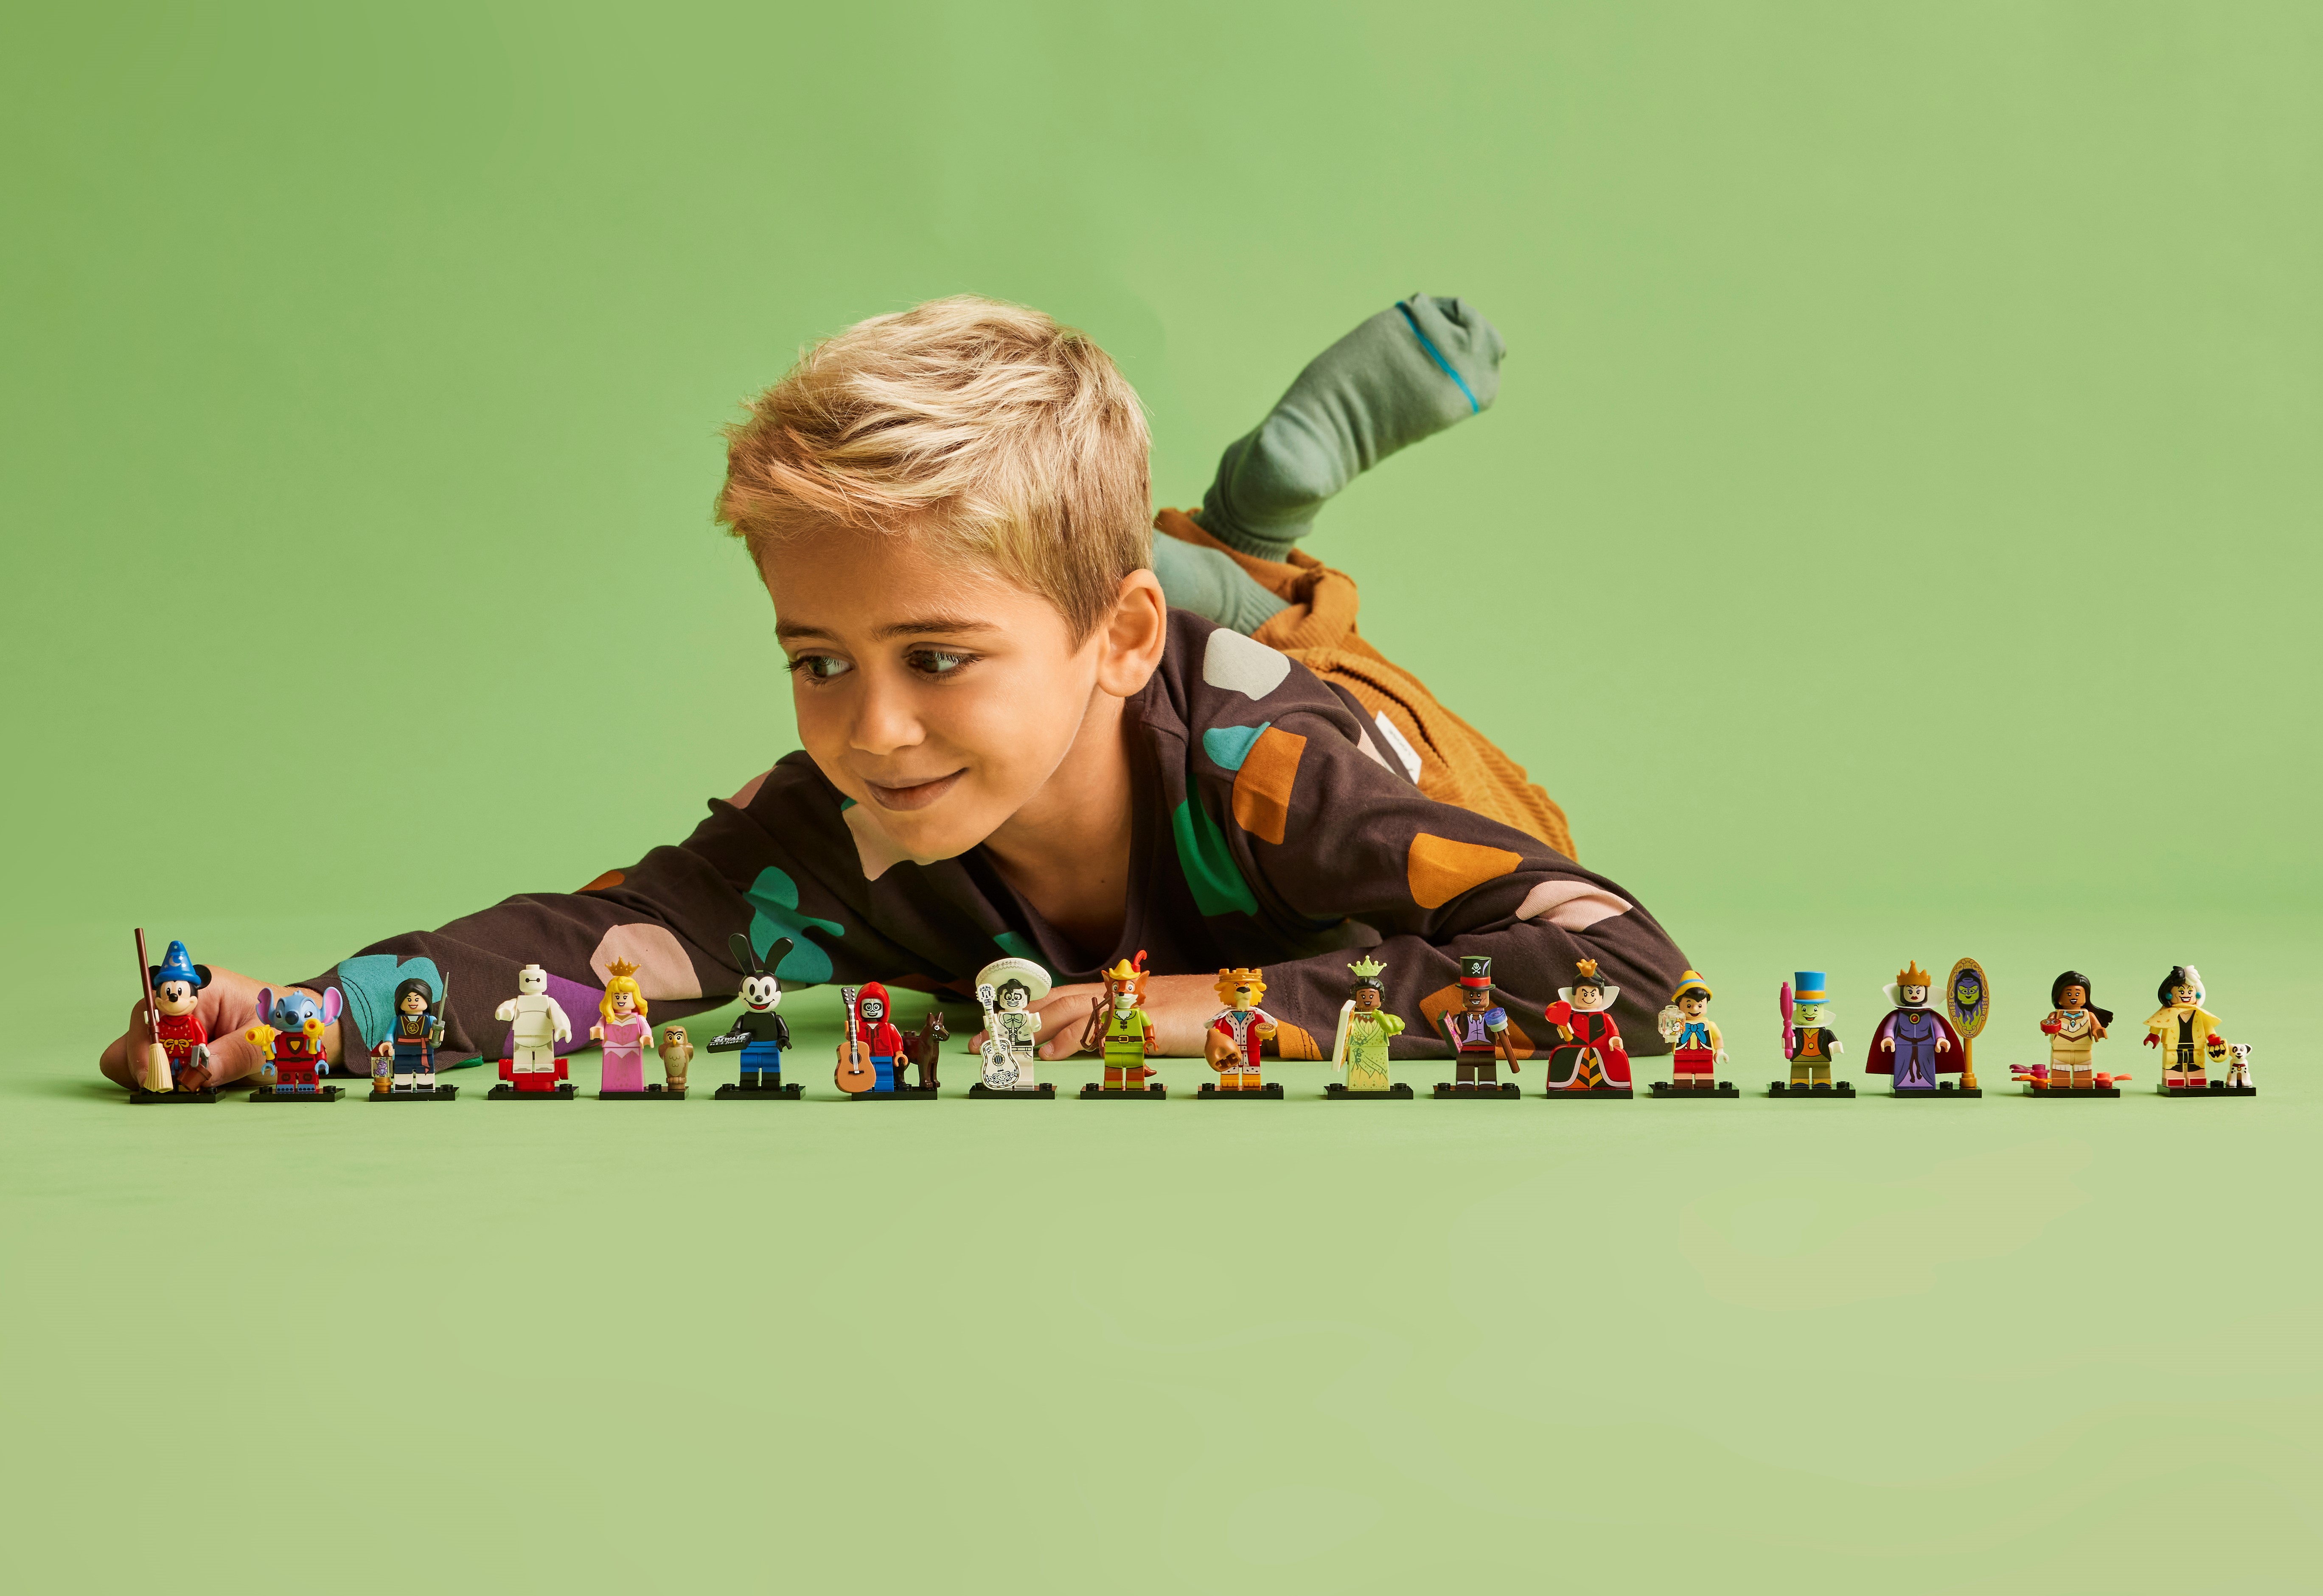 LEGO® Disney™ - LEGO.com for kids